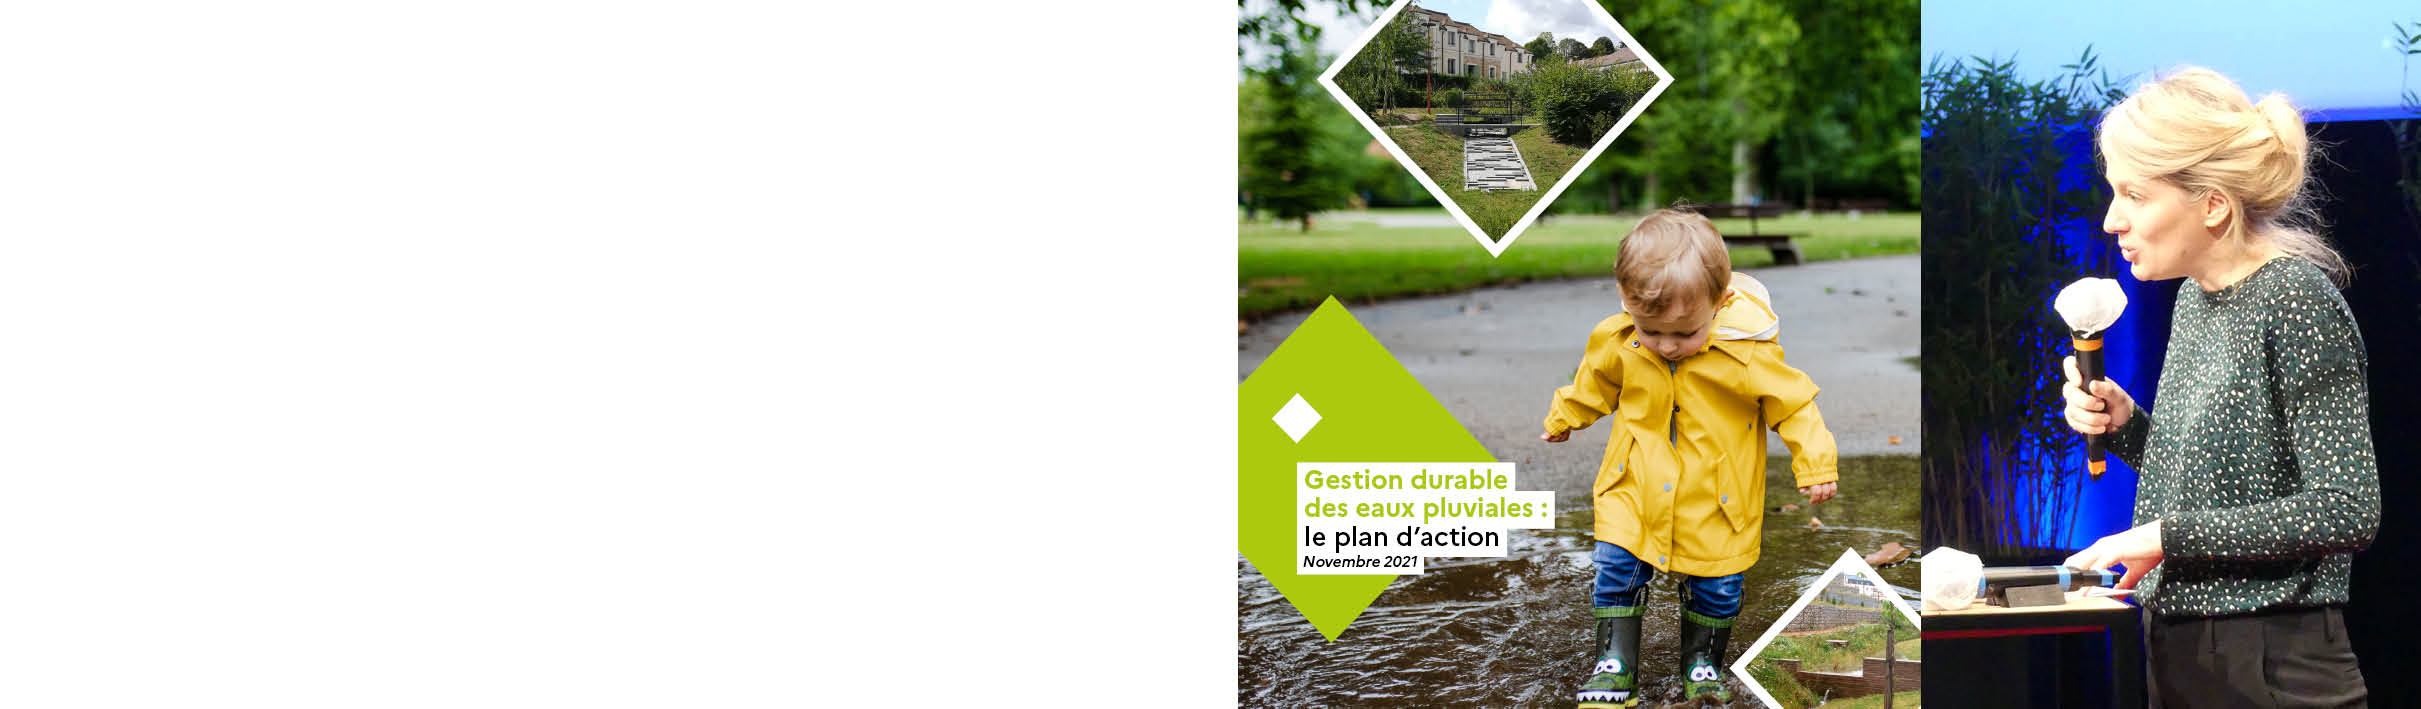 bandeau_plan_national_gestion_eaux_pluviales_2021.jpg